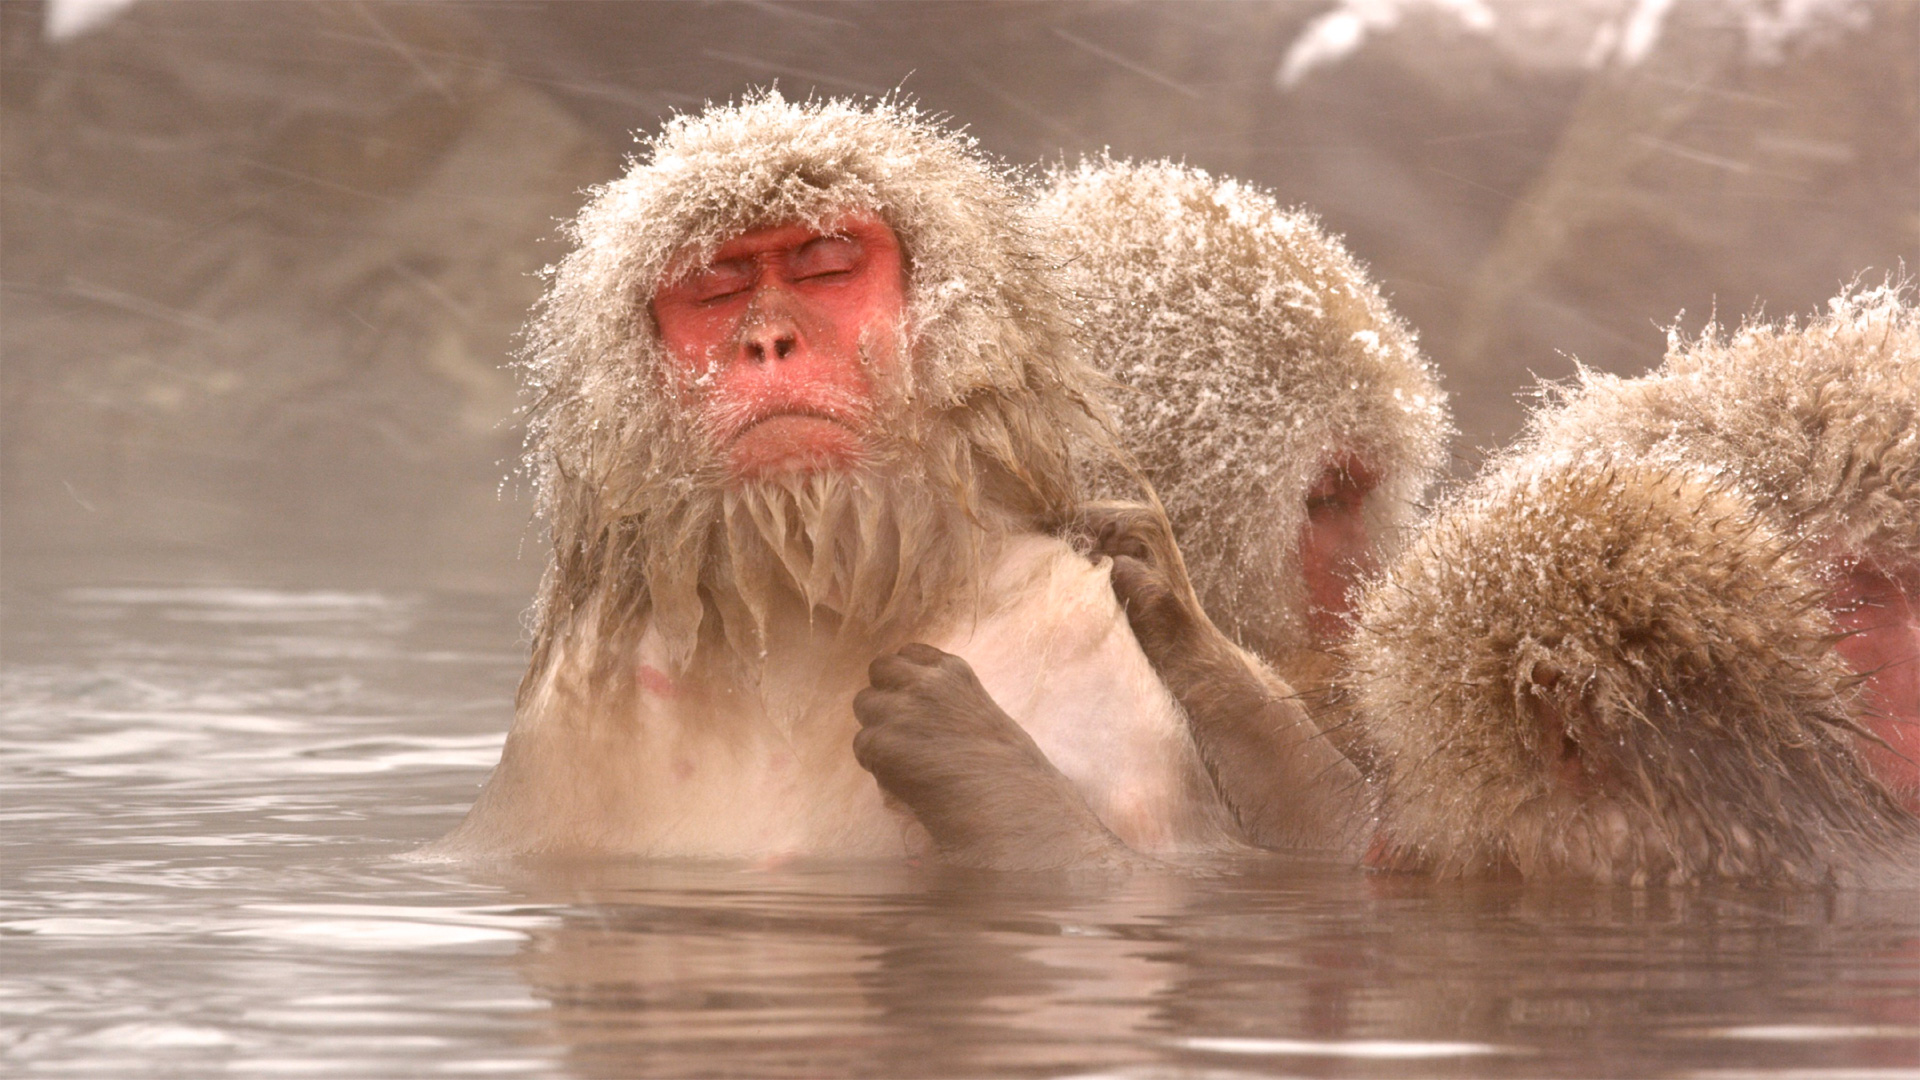 Frozen monkey. Обезьяны в горячих источниках. Обезьяна в Японии в воде. Обезьяны в горячих источниках обои ПК. Икари обезьяна Нэшнл географик.